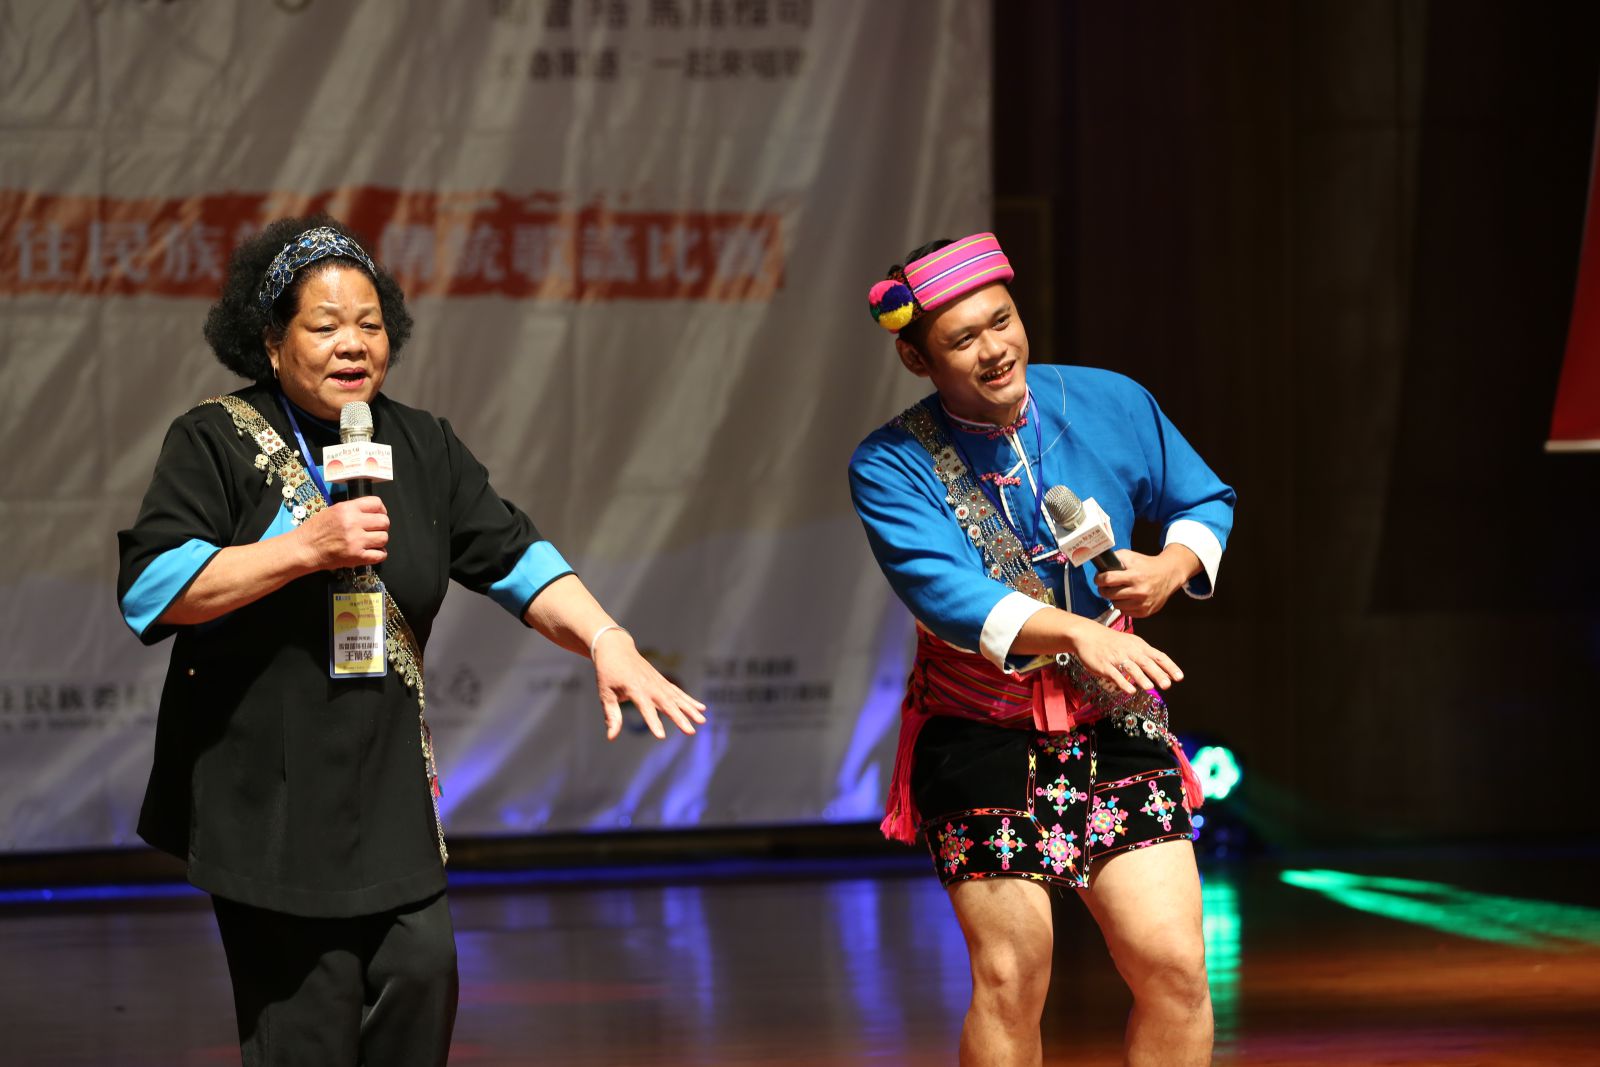 參賽者祖孫攜手為傳統歌謠展現活力與熱情。